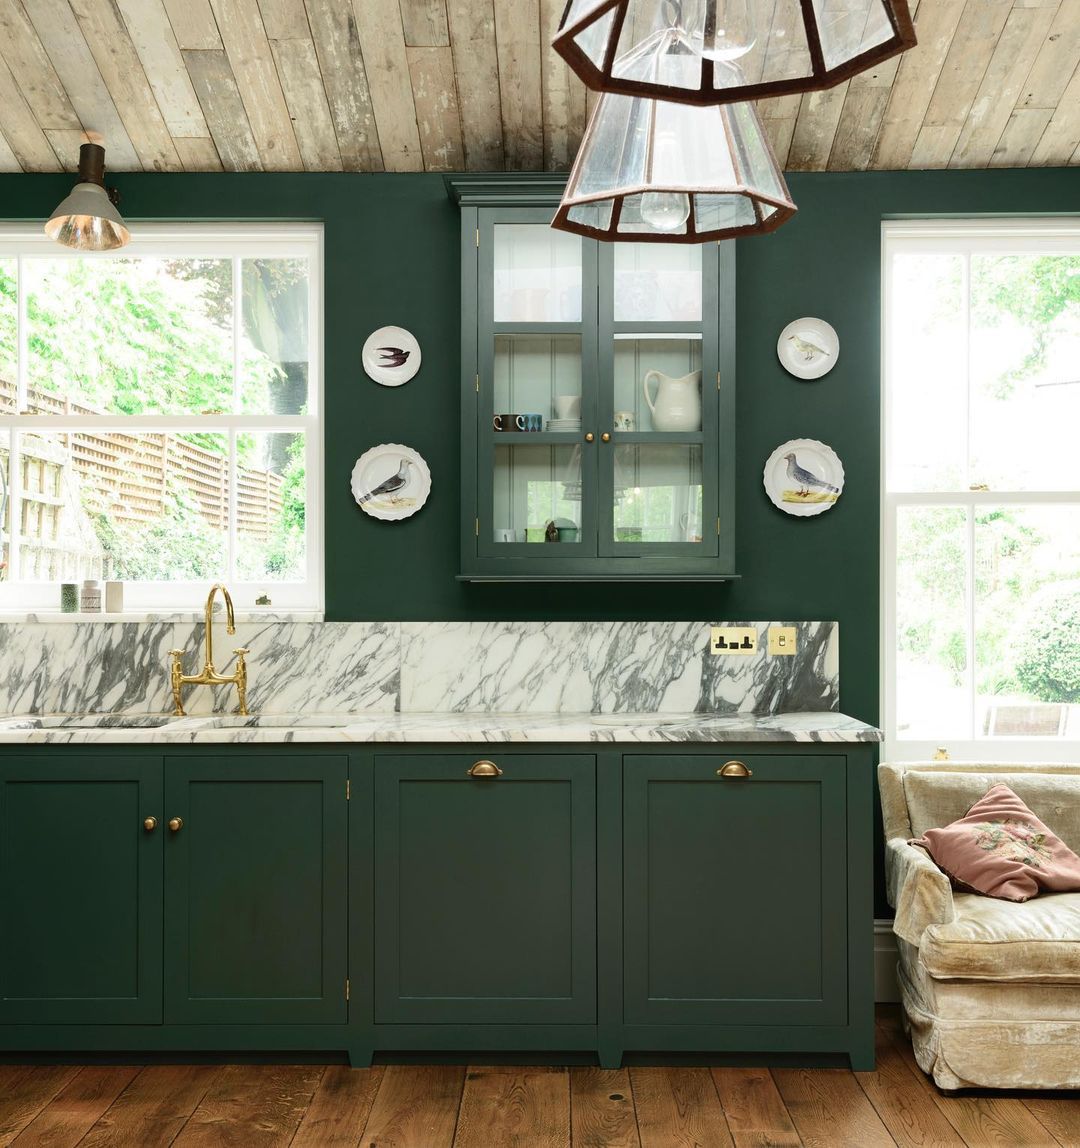 Từ nhẹ nhàng đến sang trọng, đây là những thiết kế nhà bếp với gam màu xanh lá khiến bạn không chê vào đâu được - Ảnh 4.